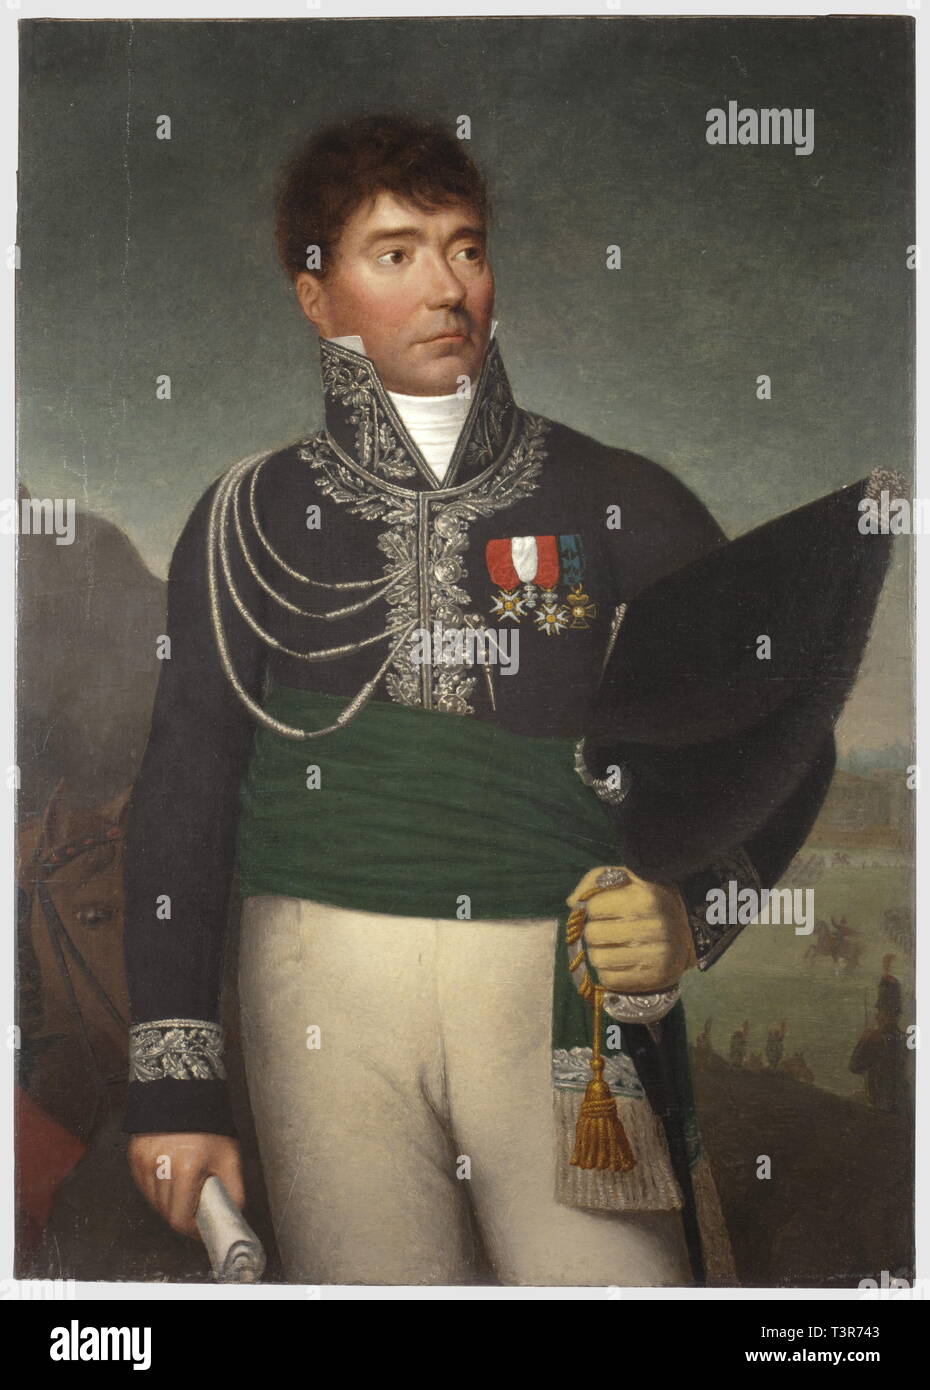 DIRECTOIRE-CONSULAT-EMPIRE 1795-1814, Huile sur toile représentant un officier général du Royaume d'Italie, période du 1er Empire. L'officier est présenté en habit de grande tenue, l'uniforme de nuance verte très foncée est brodé en fil d'argent (au collet, parements et au niveau des boutonnières), il porte l'aiguillette sur l'épaule droite, la ceinture-écharpe est d'une nuance verte plus claire que l'uniforme, elle est brodée de fil d'argent et bordée par des torsades d'officier supérieur. Le général porte plusieurs décorations, dont certaines apparai, Artist's Copyright has not to be cleared Stock Photo